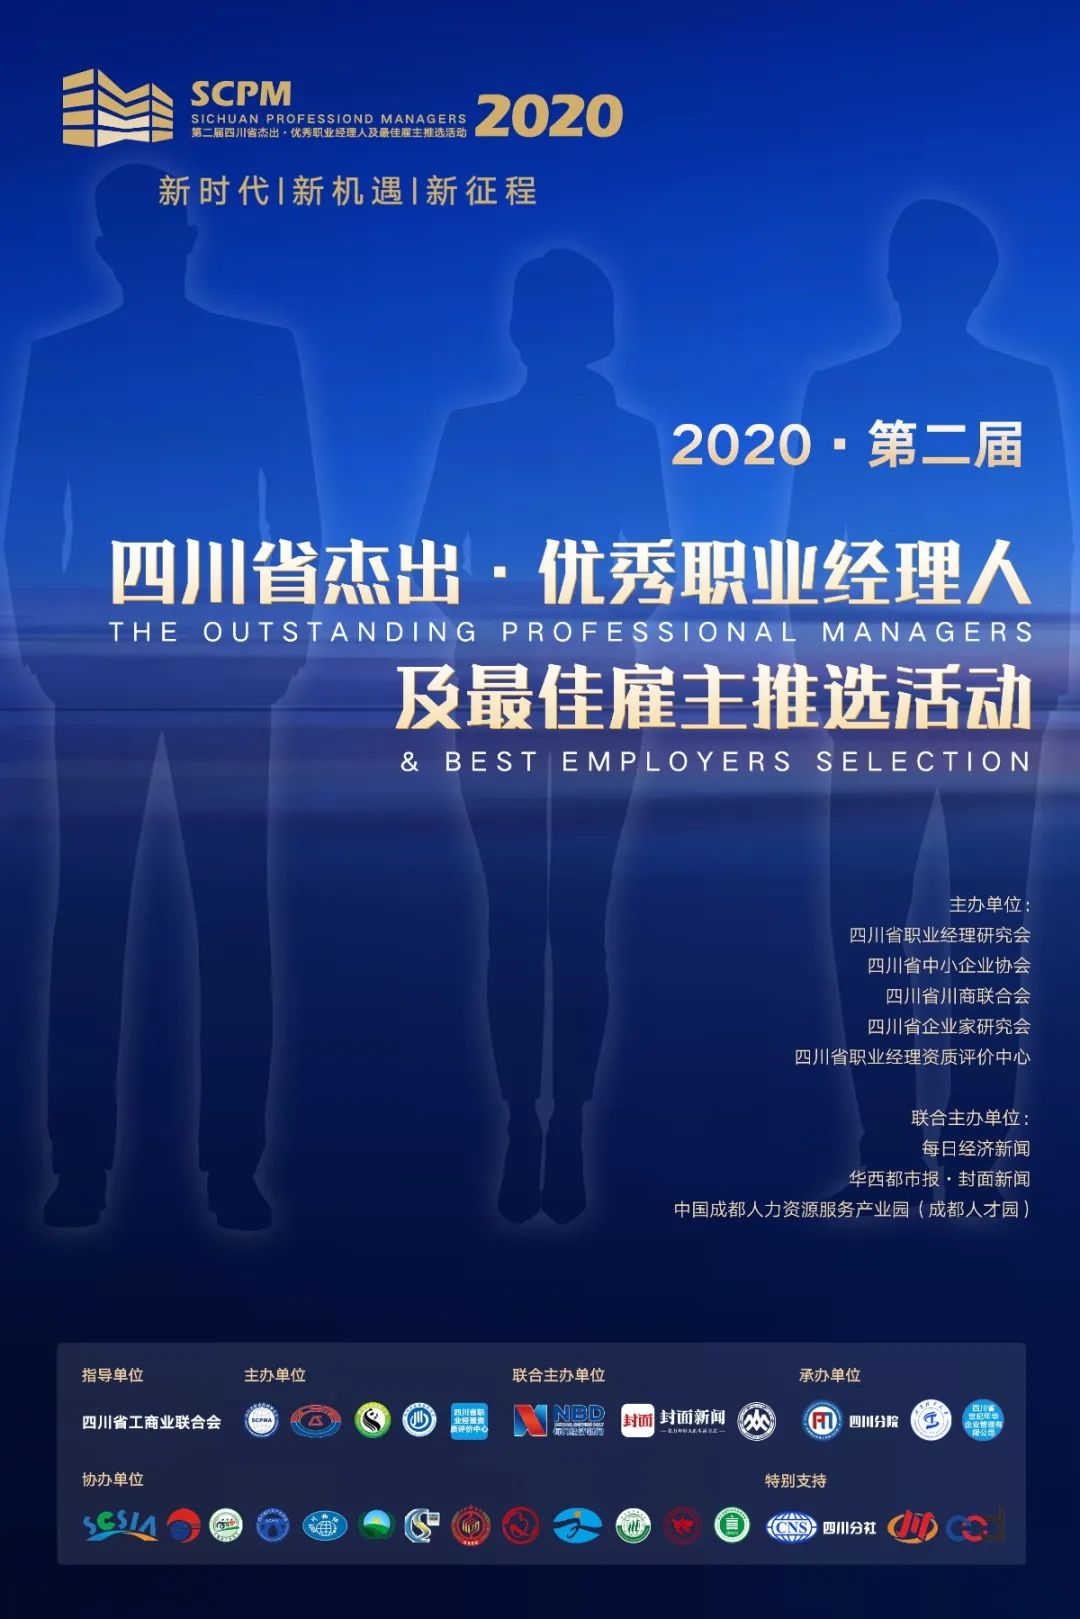 四川省杰出·优秀职业经理人及最佳雇主评选活动获奖名单公布啦